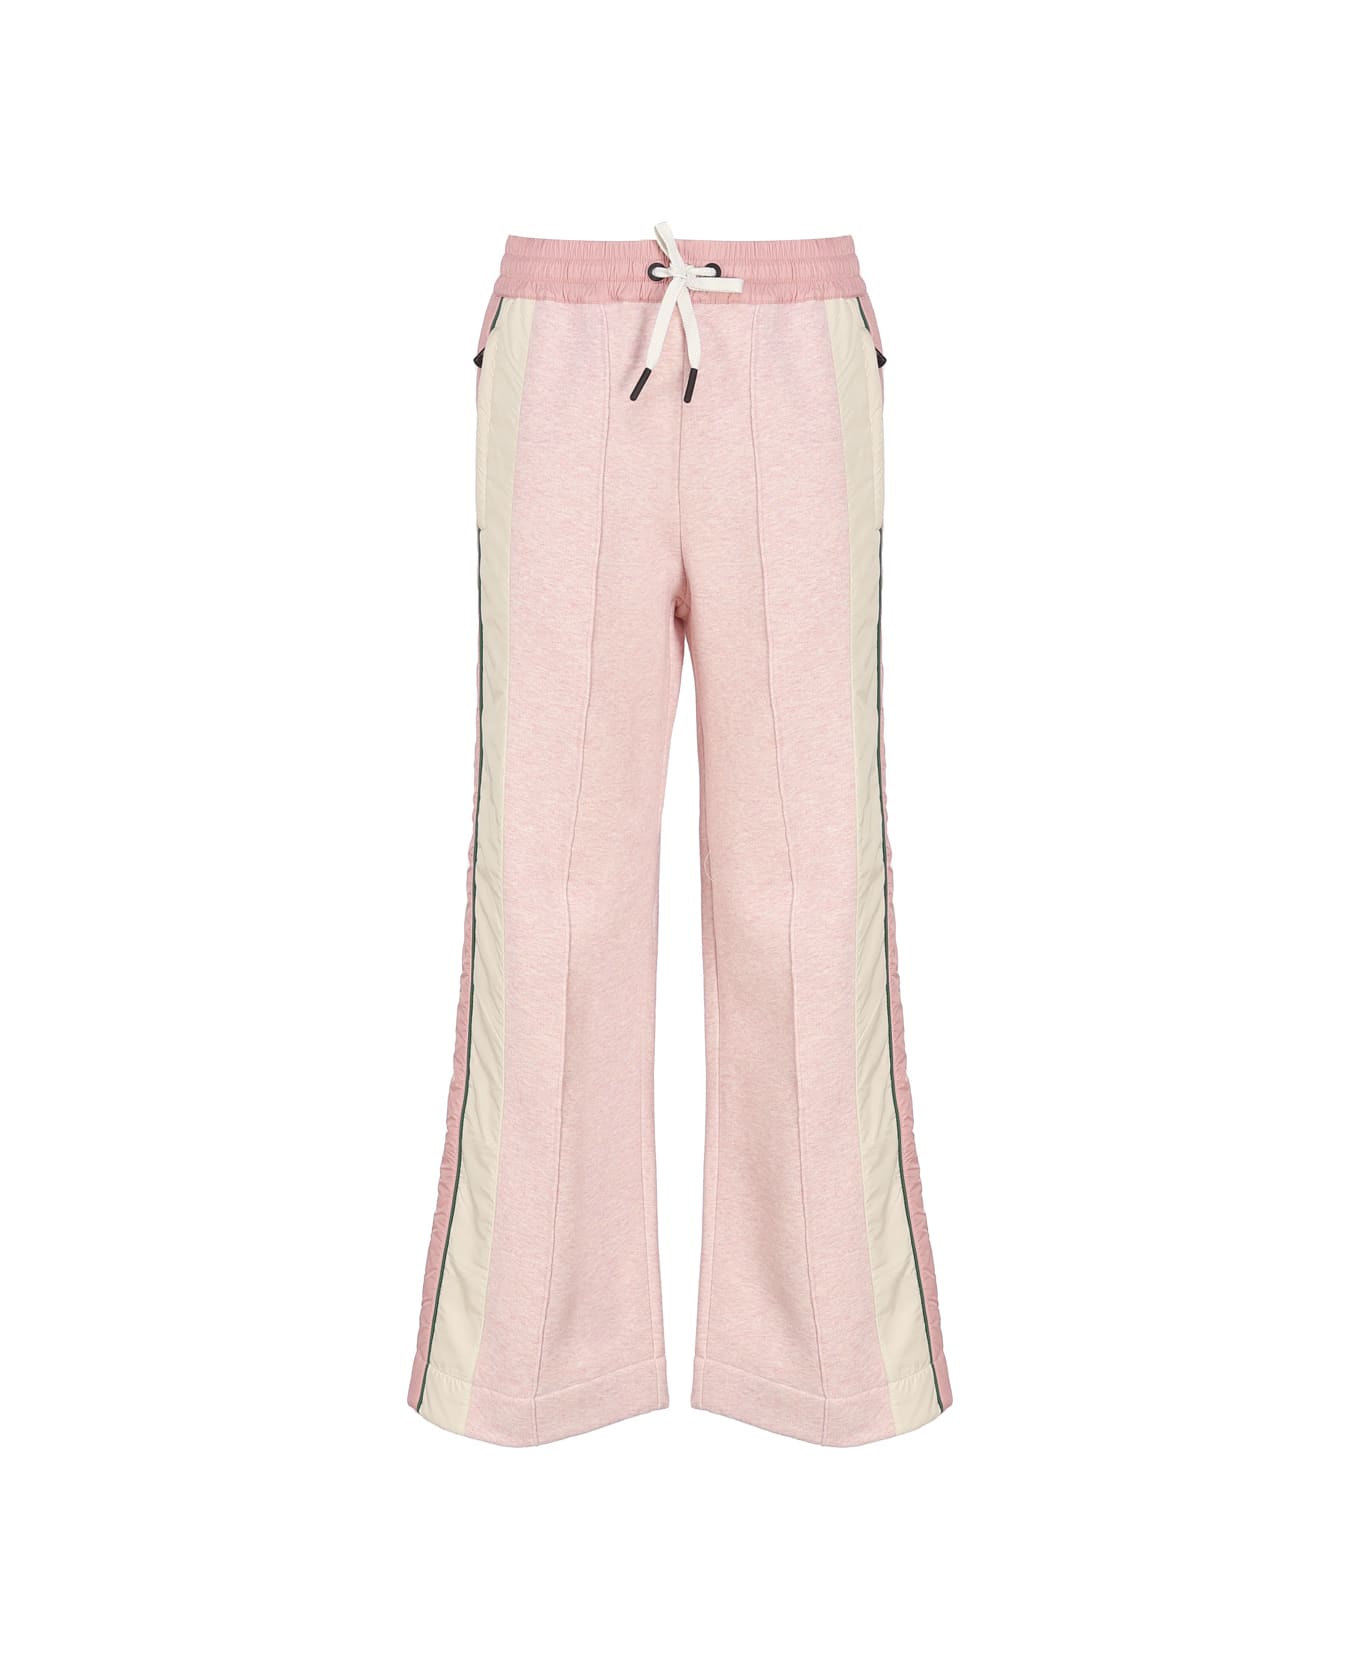 Moncler Pile Pants - Pink ボトムス